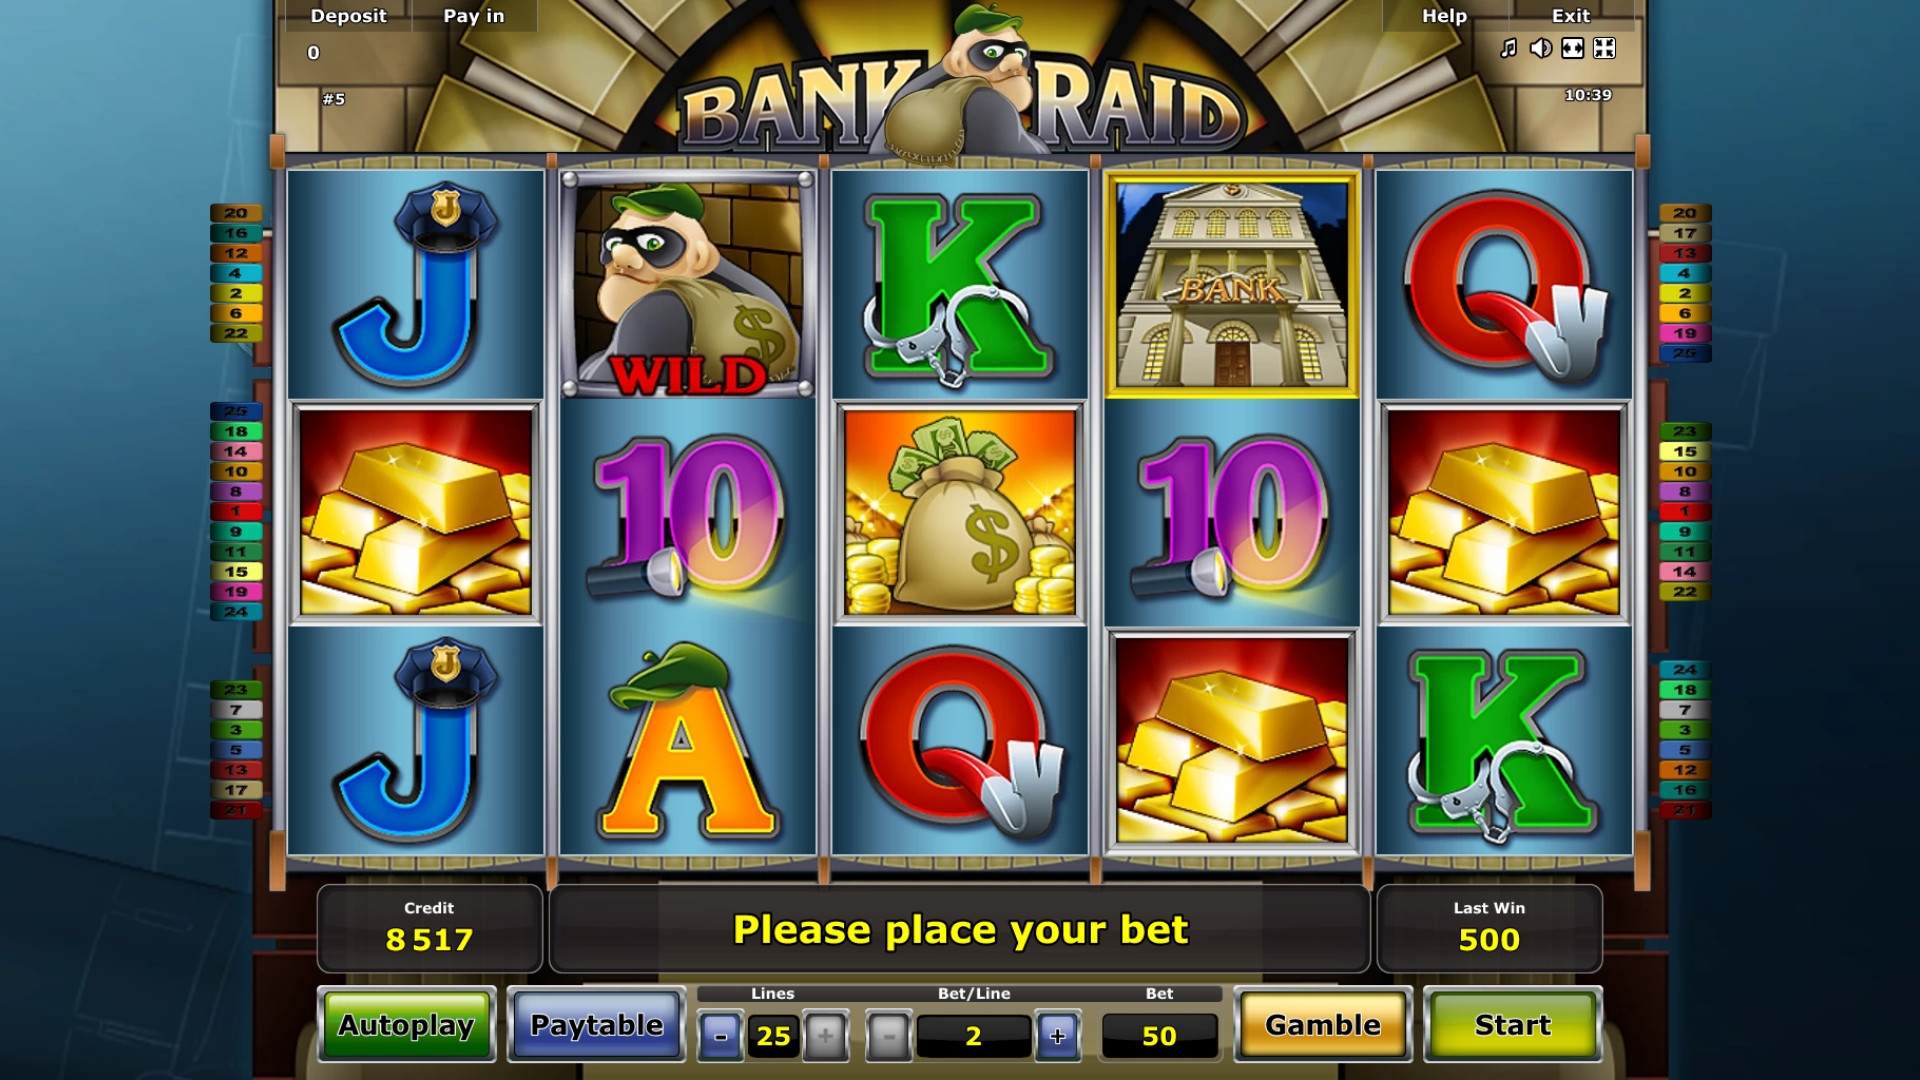 Bank Raid (Bank Raid) from category Slots